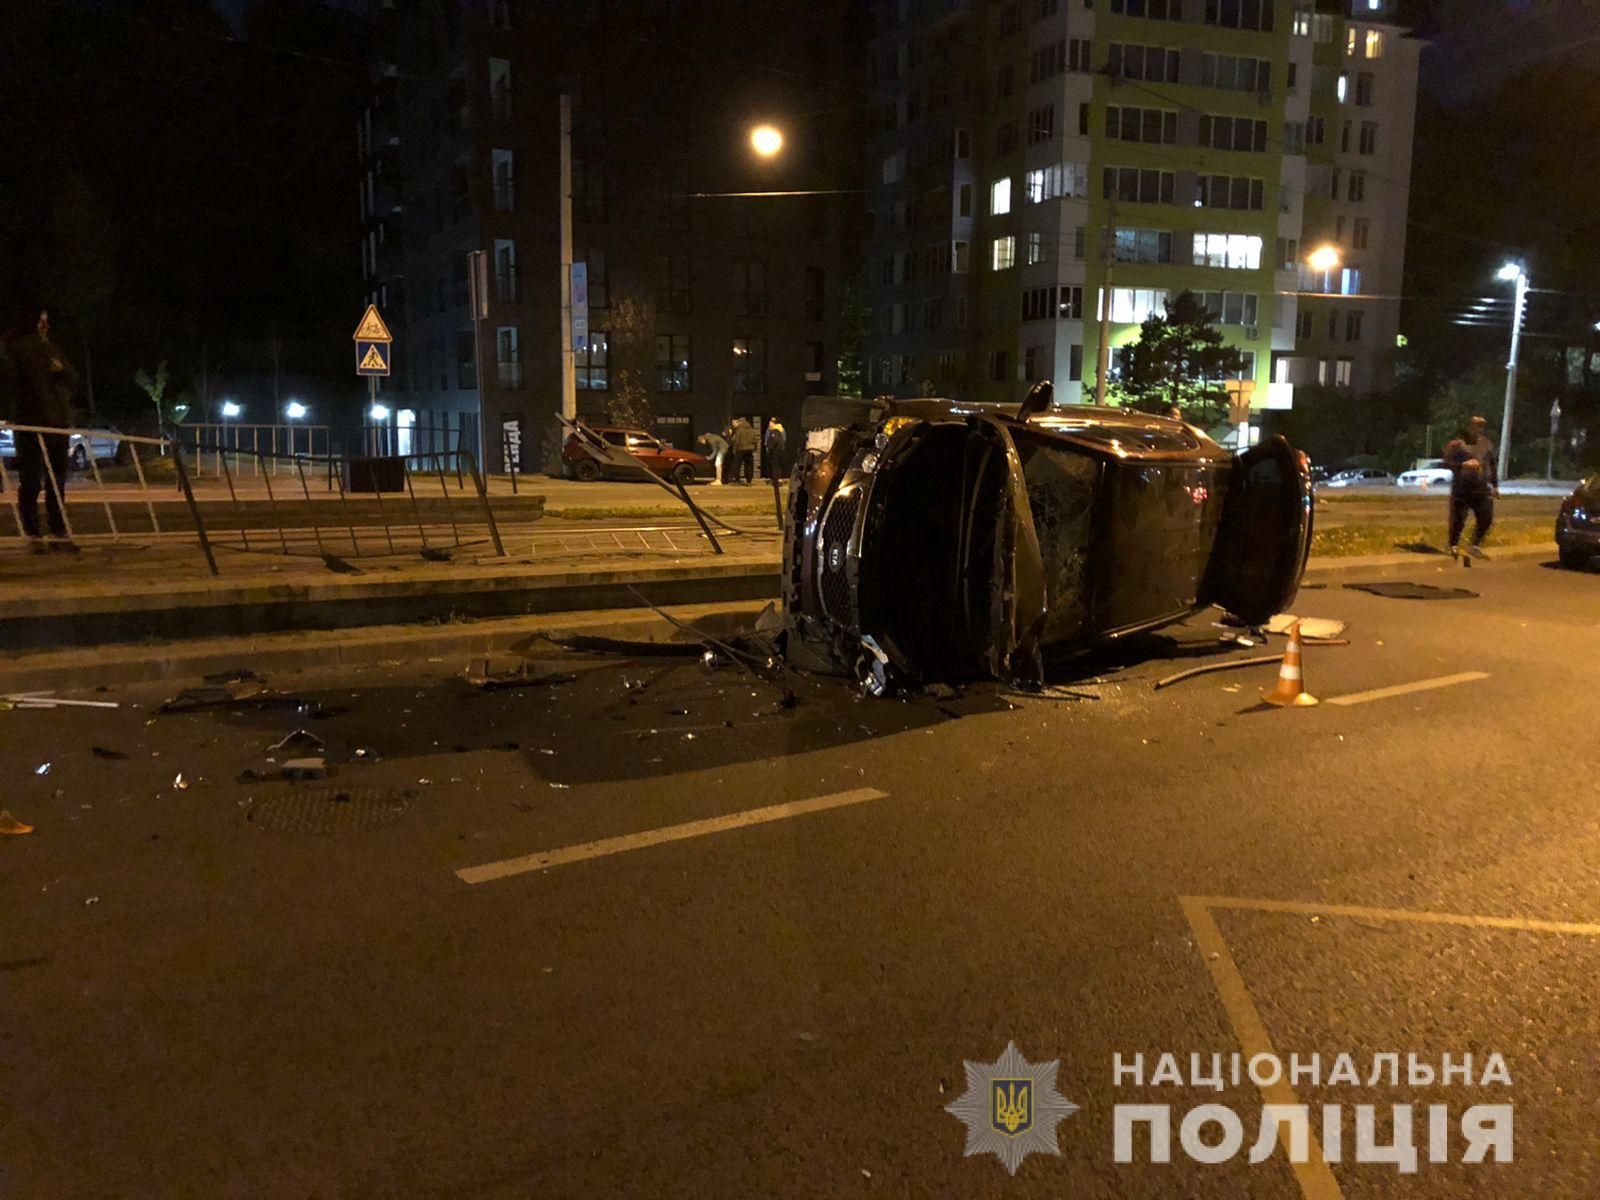 Авто влетело в остановку и перевернулось: во Львове произошло сокрушительное ДТП